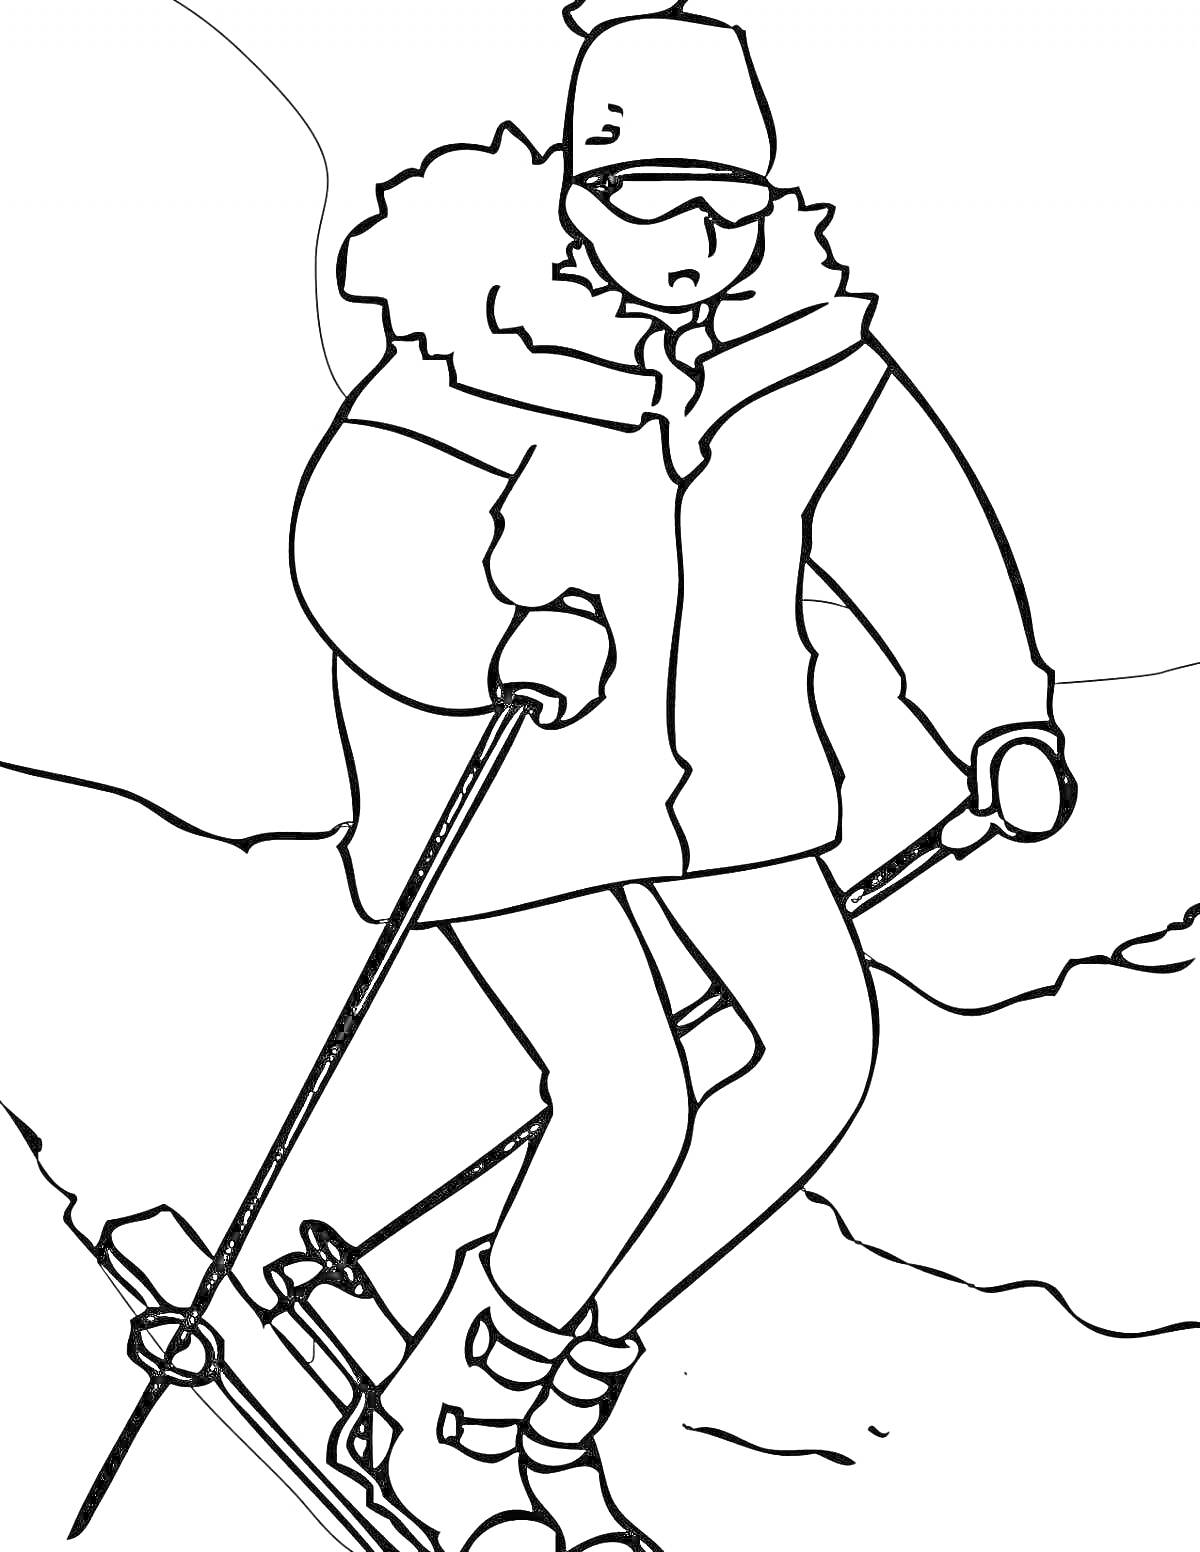 Лыжник в зимней одежде на склоне с лыжными палками